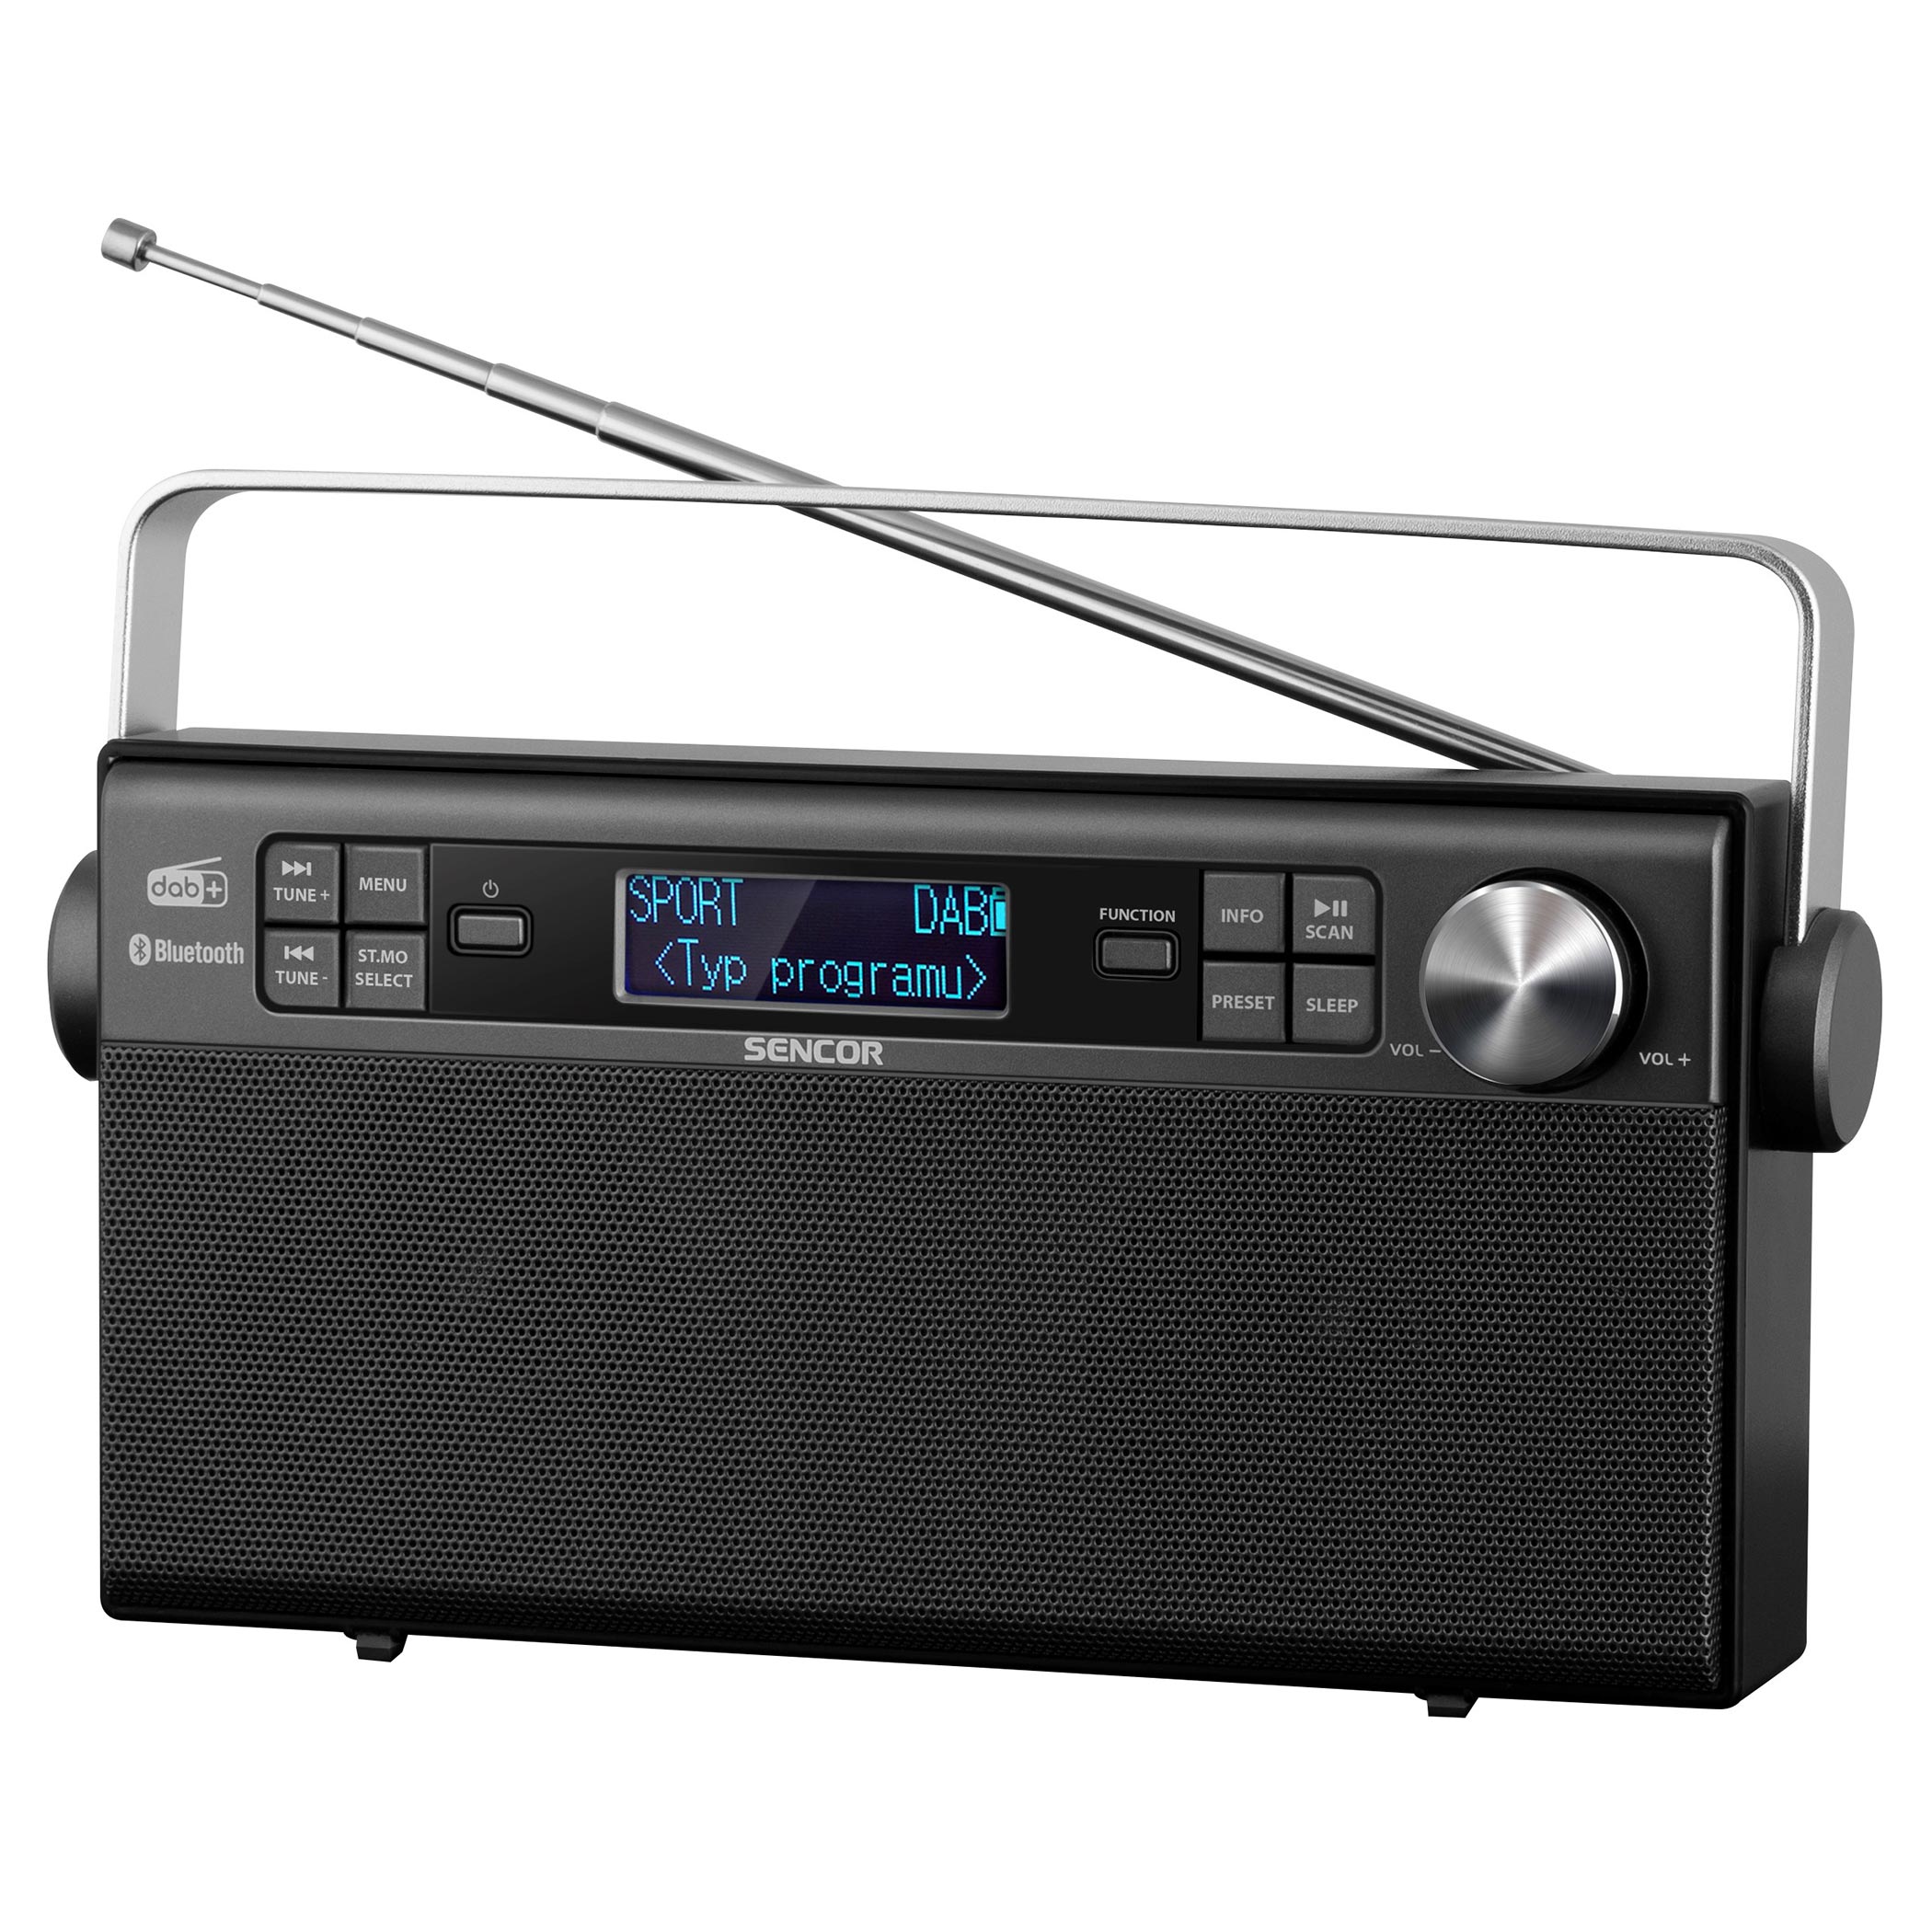 Geaccepteerd Twee graden voorbeeld Digital Radio DAB+ | SRD 7800 | Sencor